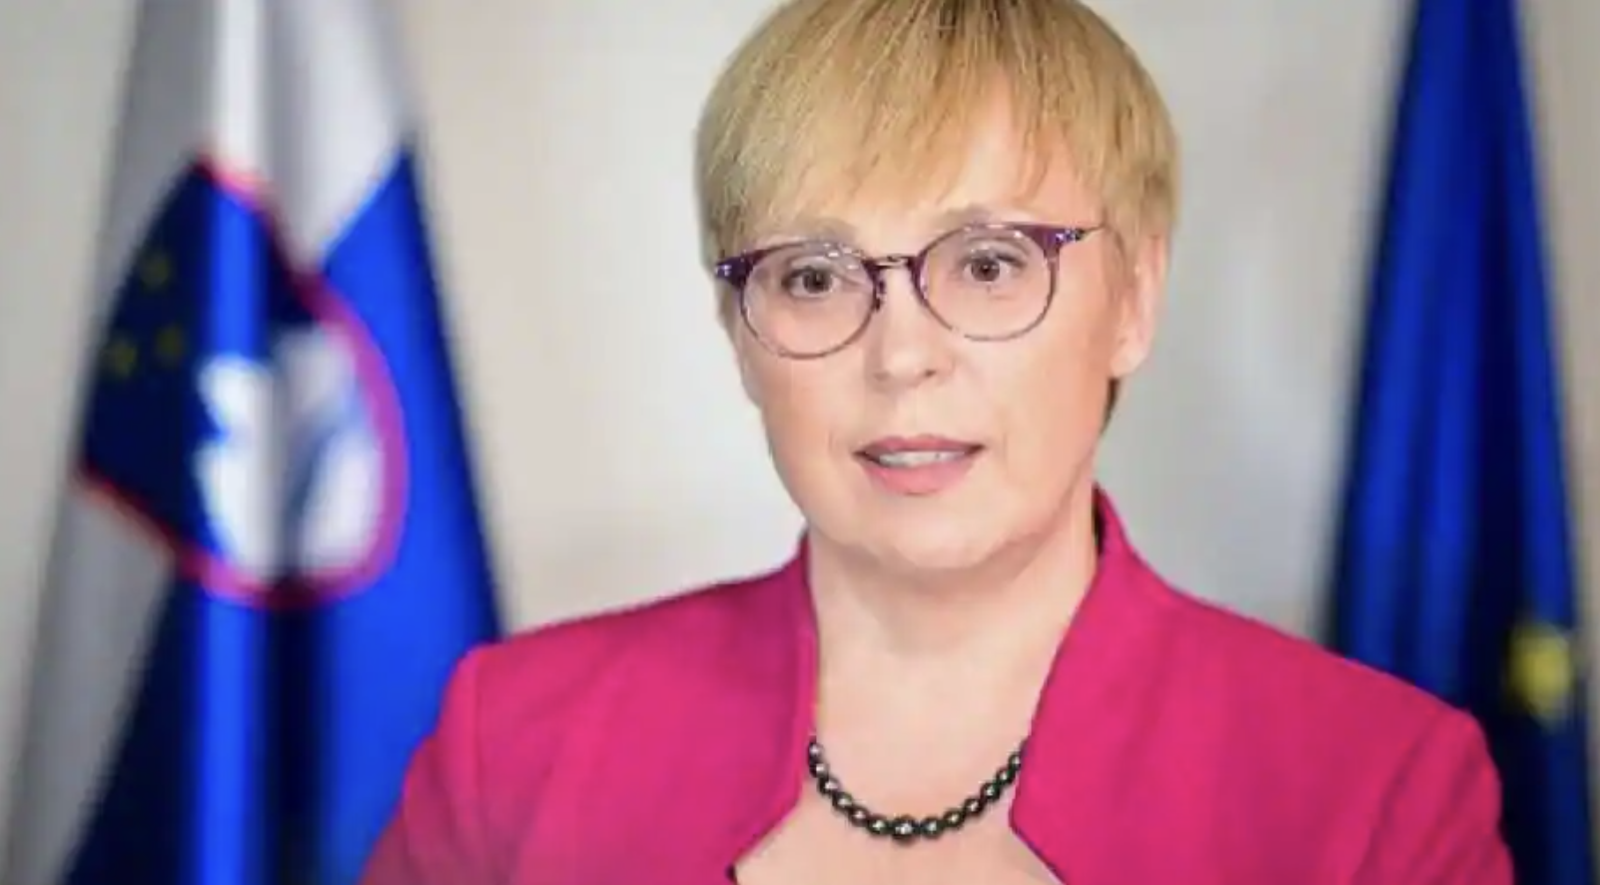  Bà Natasa Pirc Musar đã giành chiến thắng trong vòng 2 của cuộc bầu cử tổng thống Slovenia và sẽ trở thành nữ tổng thống đầu tiên của nước này. Ảnh: AFP